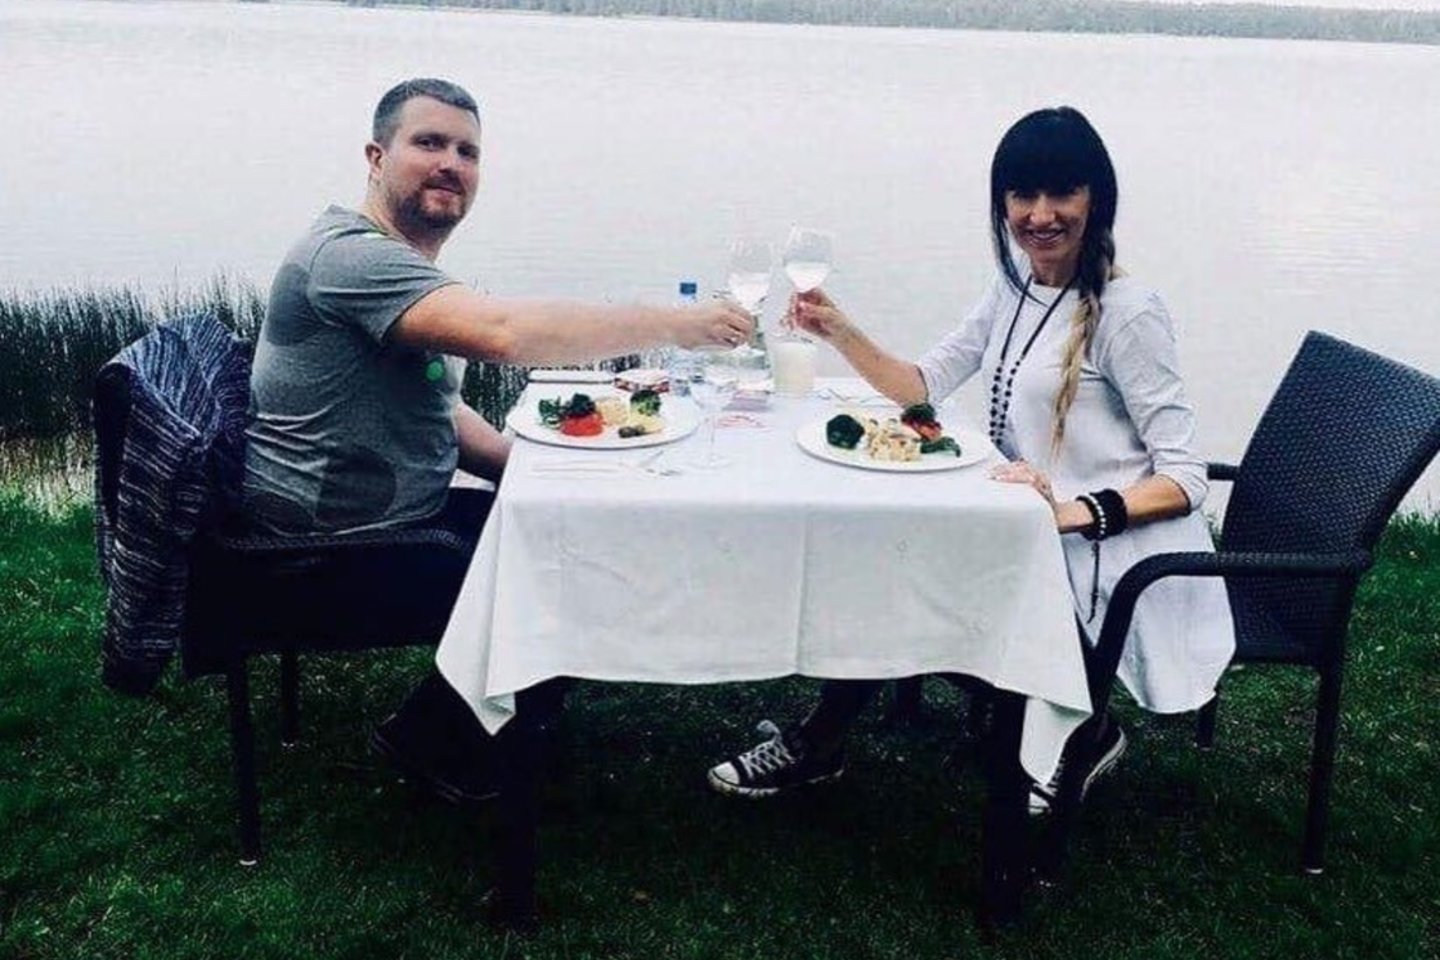  Katažina Zvonkuvienė pasidalijo vestuvių metinių kadrais nuo pat pirmųjų.<br> Soc. tinklo nuotr.